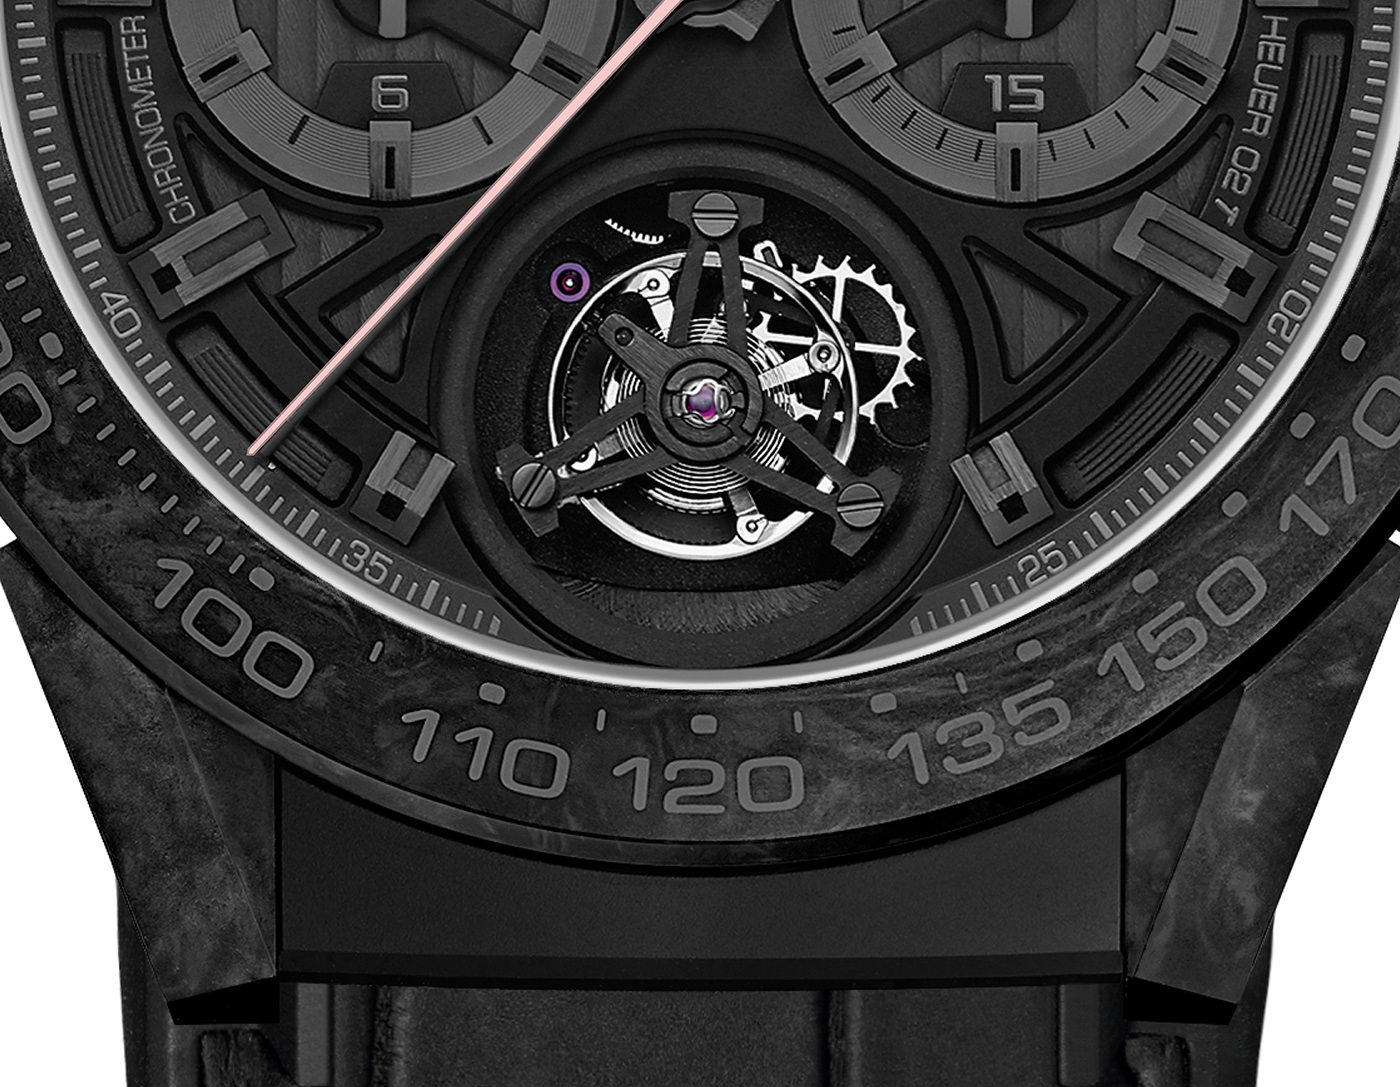 TAG Heuer представляет лимитированные часы Carrera Heuer 02T Tourbillon COSC специальной серии